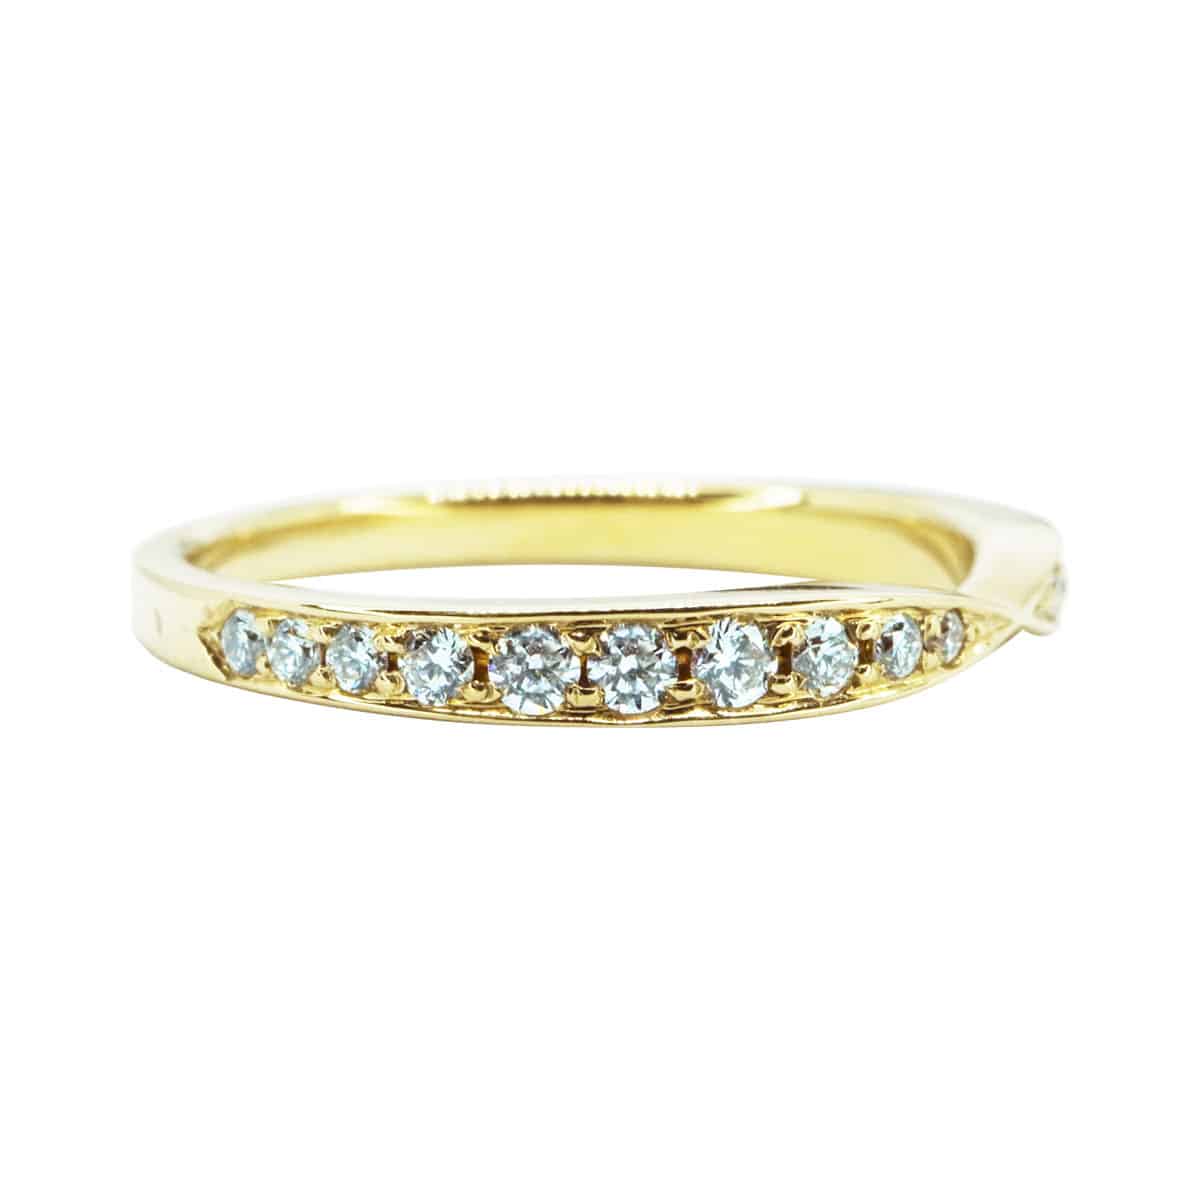 DeRocks Tapered Diamond Eternity Ring in 18k Yellow Gold - DeRocks ...